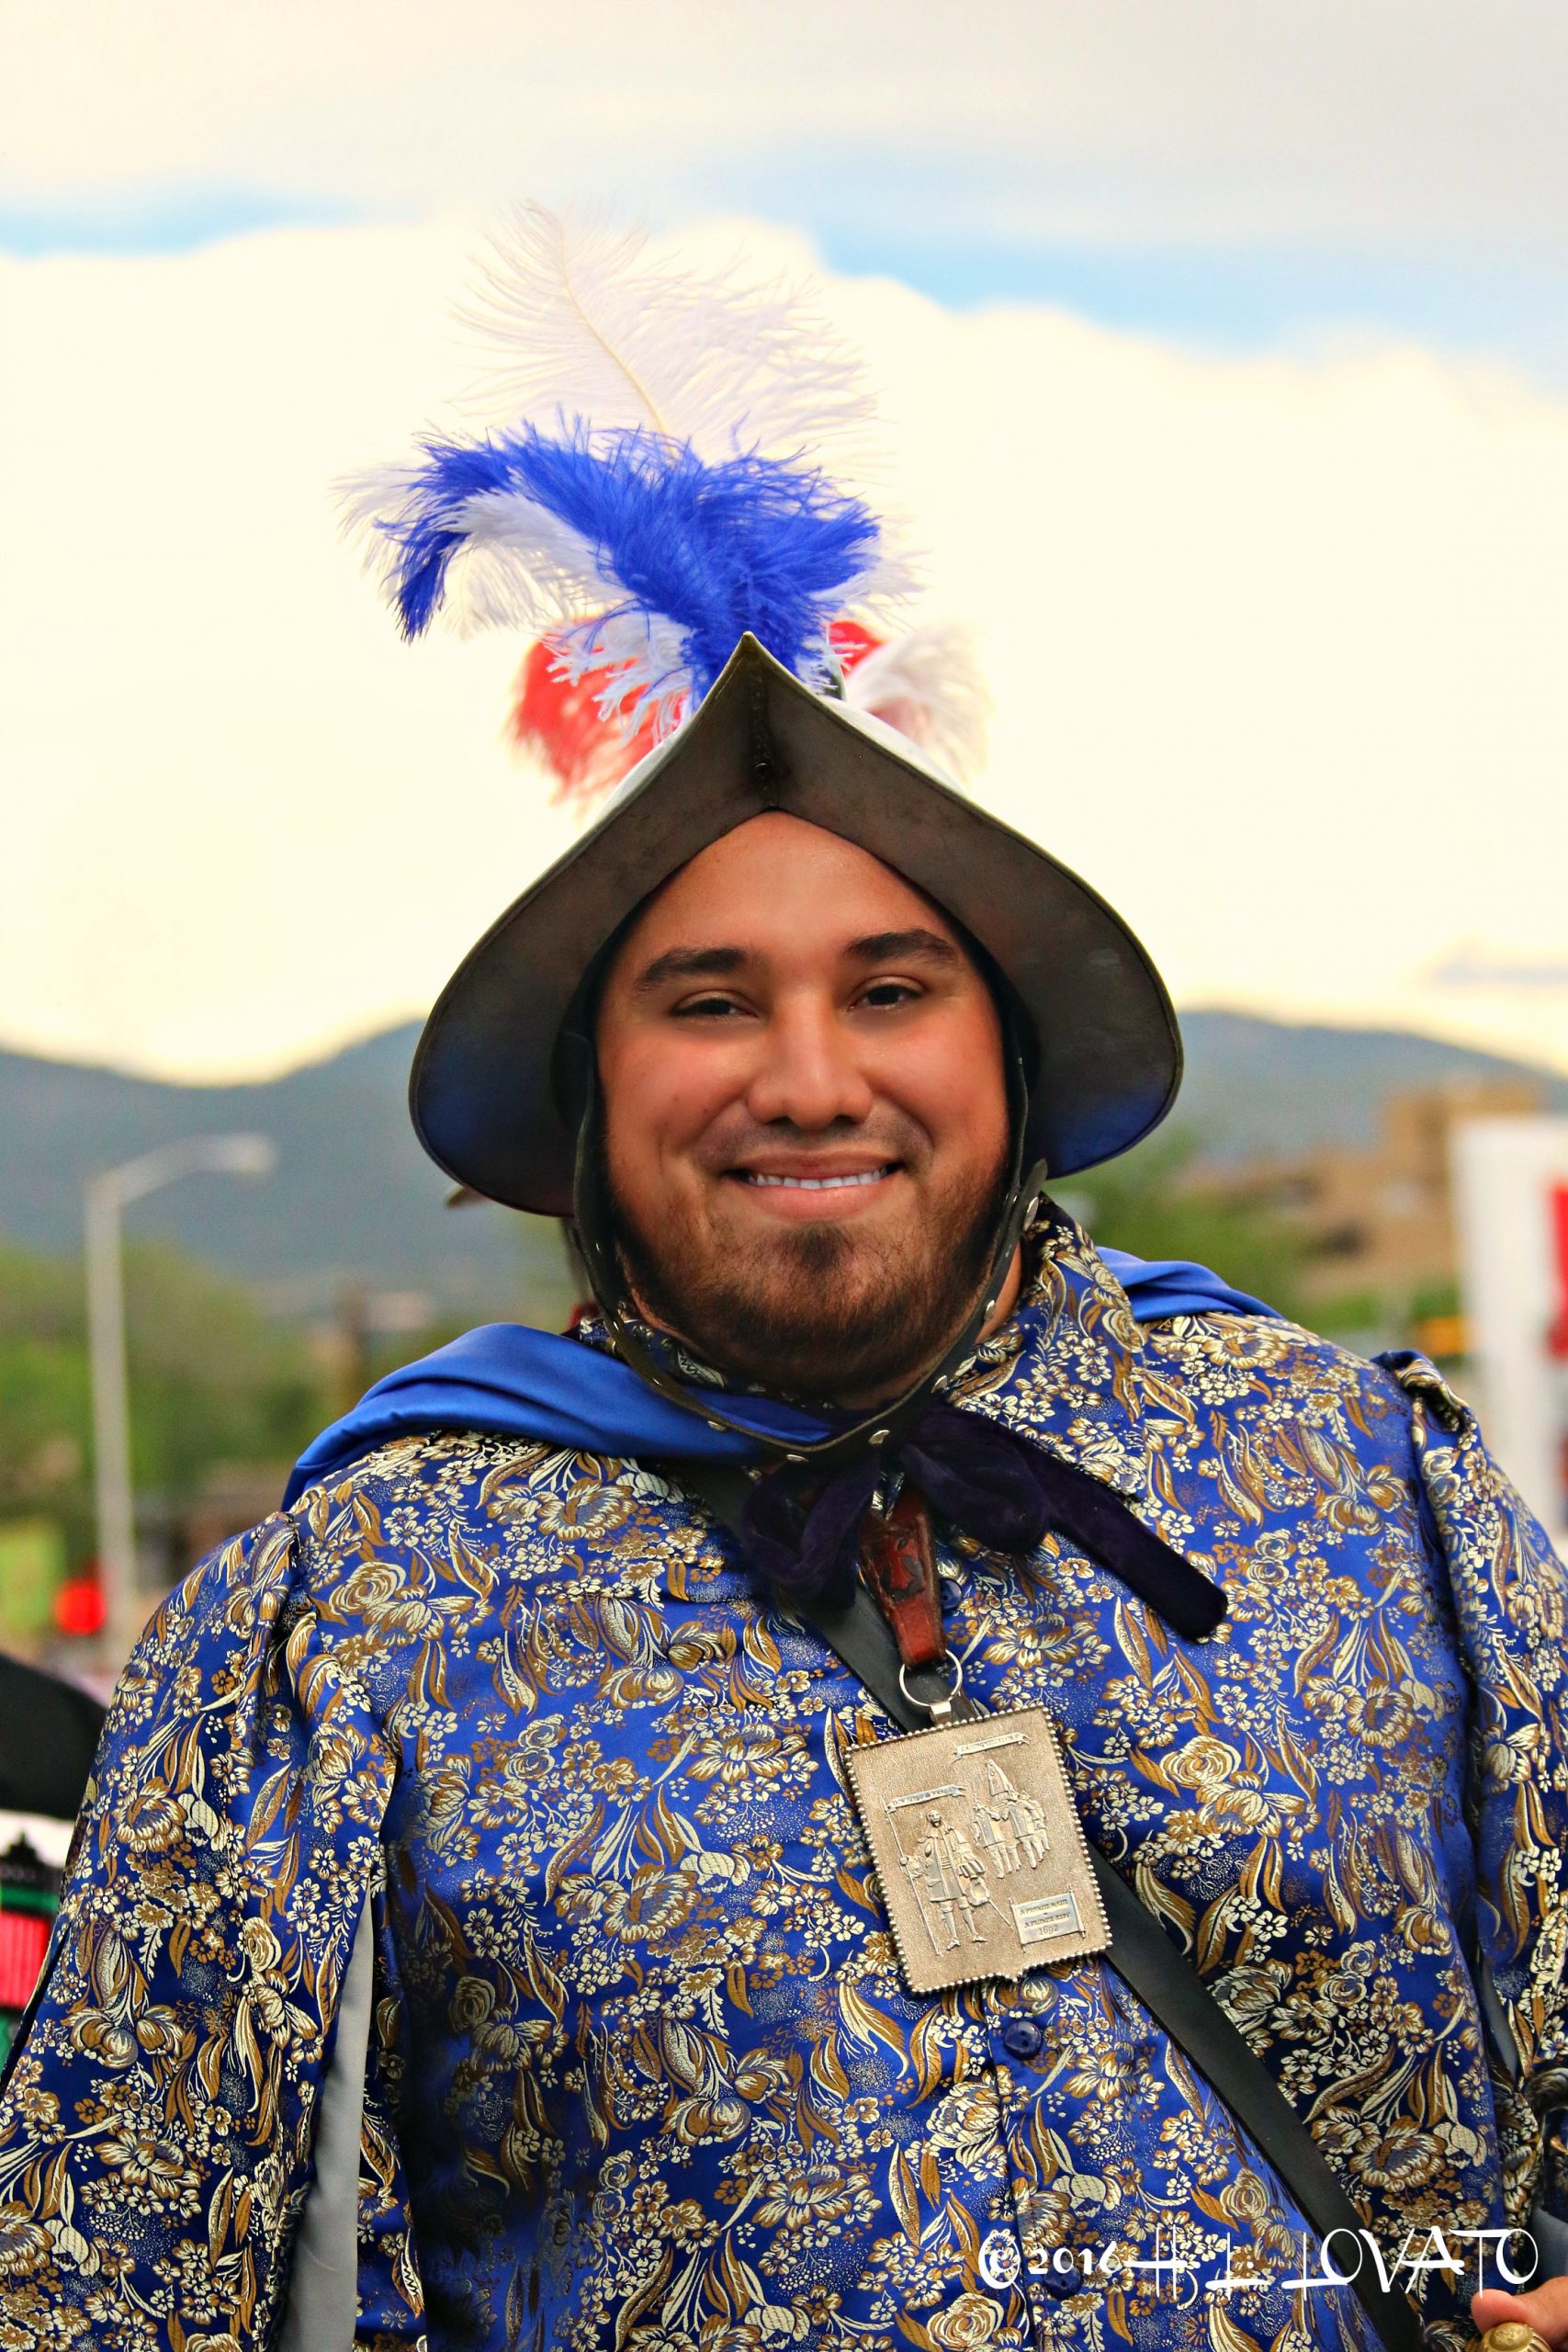 Man dressed as a conquistador